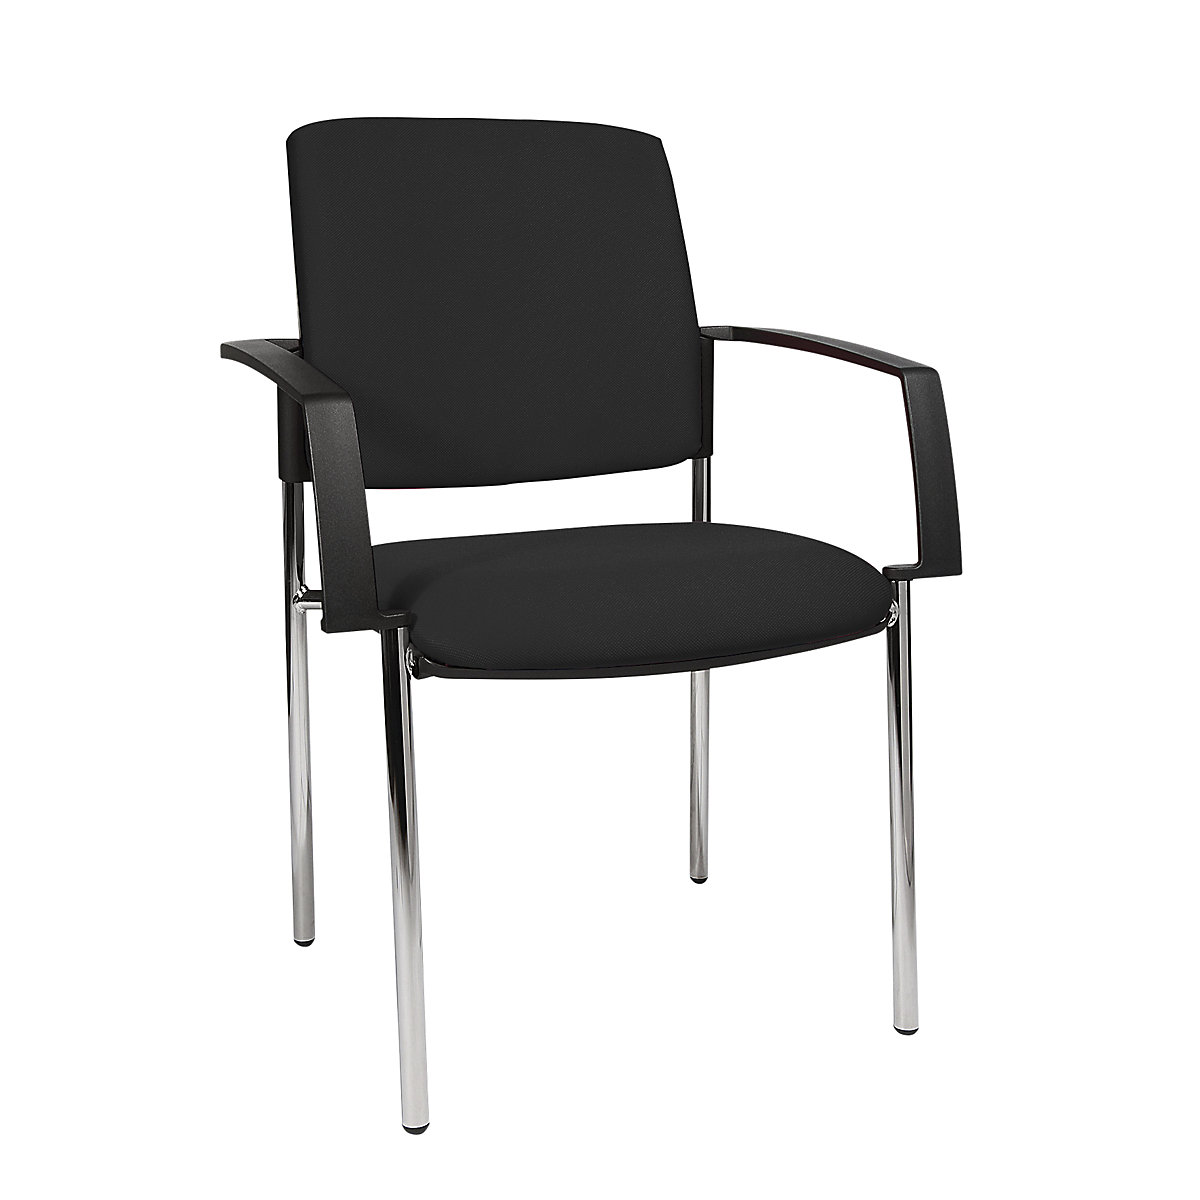 Cadeira almofadada de empilhar – Topstar, armação de quatro pés, embalagem de 2 unid., armação cromada, forro preto-7